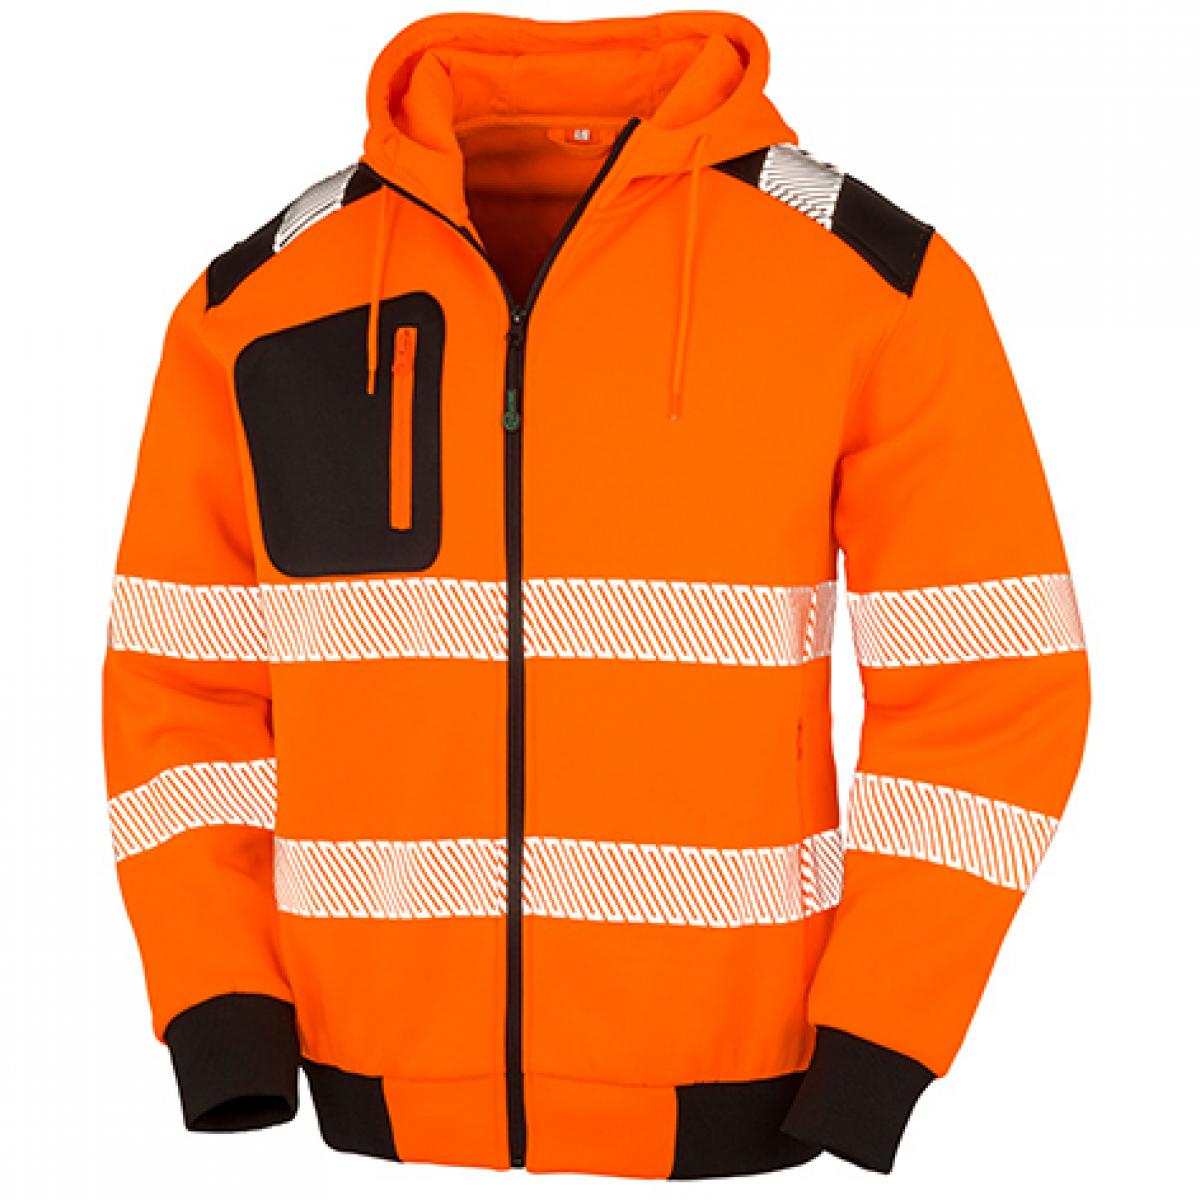 Hersteller: Result Genuine Recycled Herstellernummer: R503X Artikelbezeichnung: Recycled Robust Safety Hoody - Sicherheitsjacke mit Kapuze Farbe: Fluorescent Orange/Black